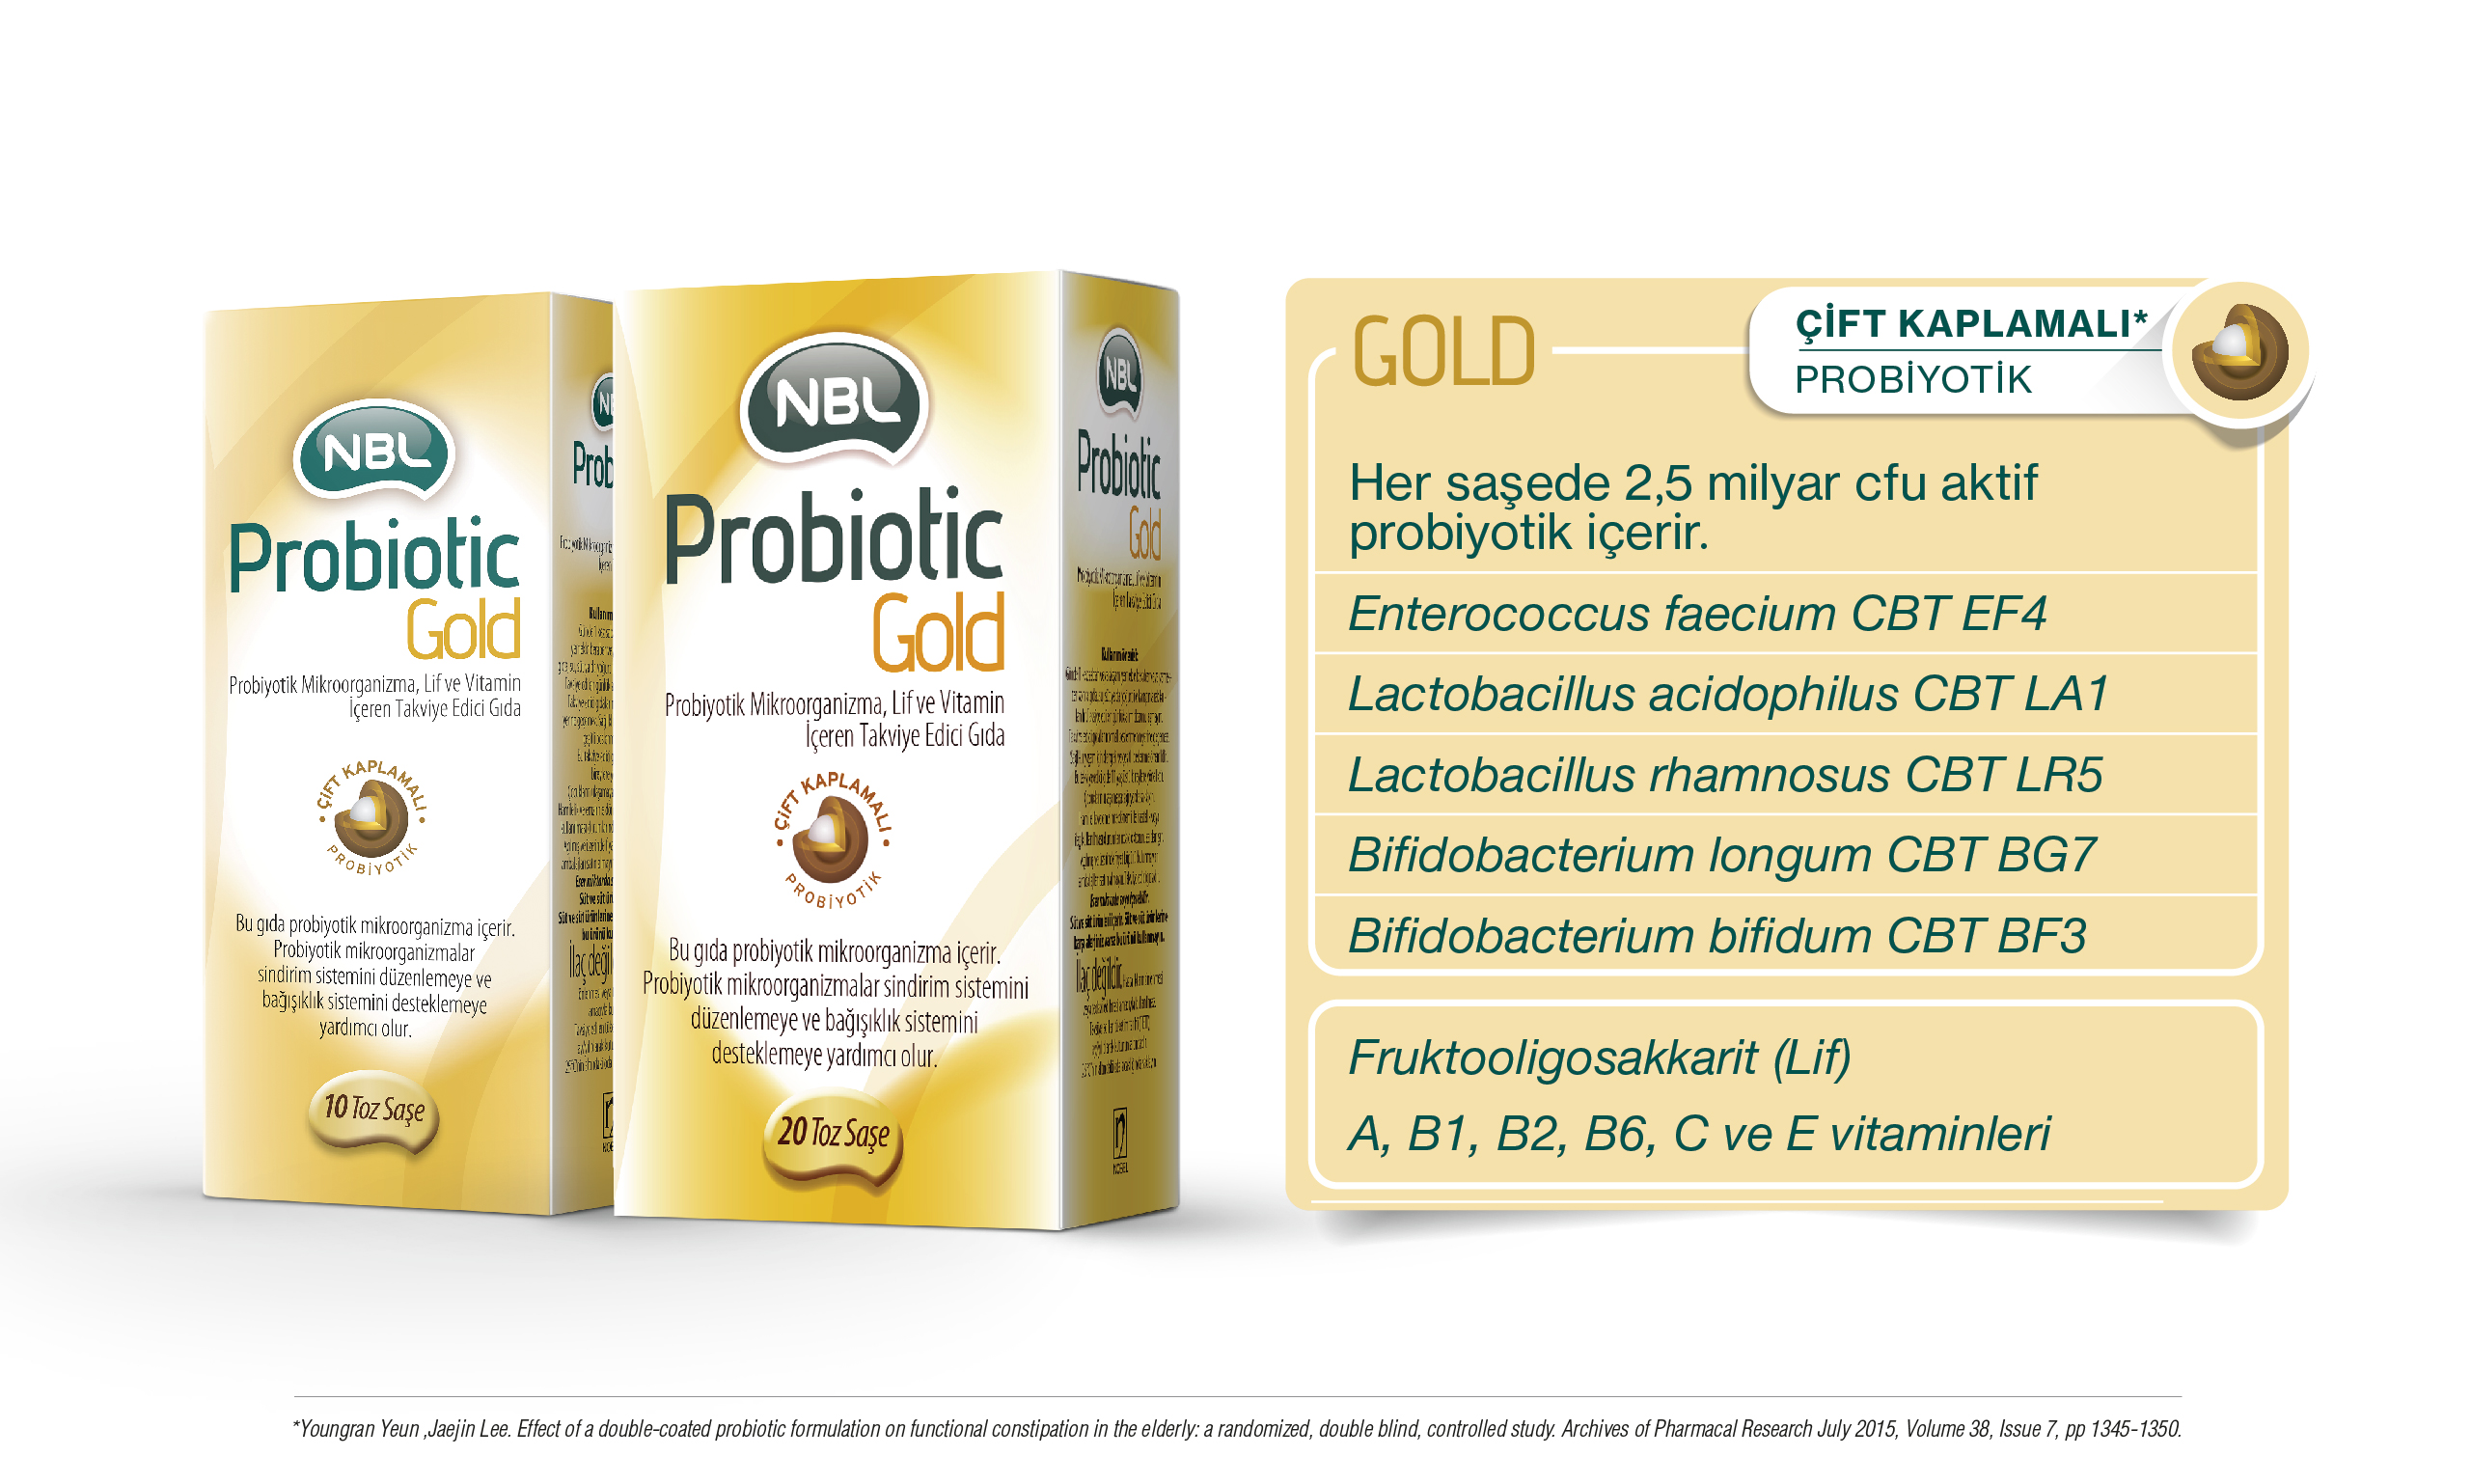 NBL Türkiye - NBL Probiotic Gold Bağırsak Destekleyici Probiyotik